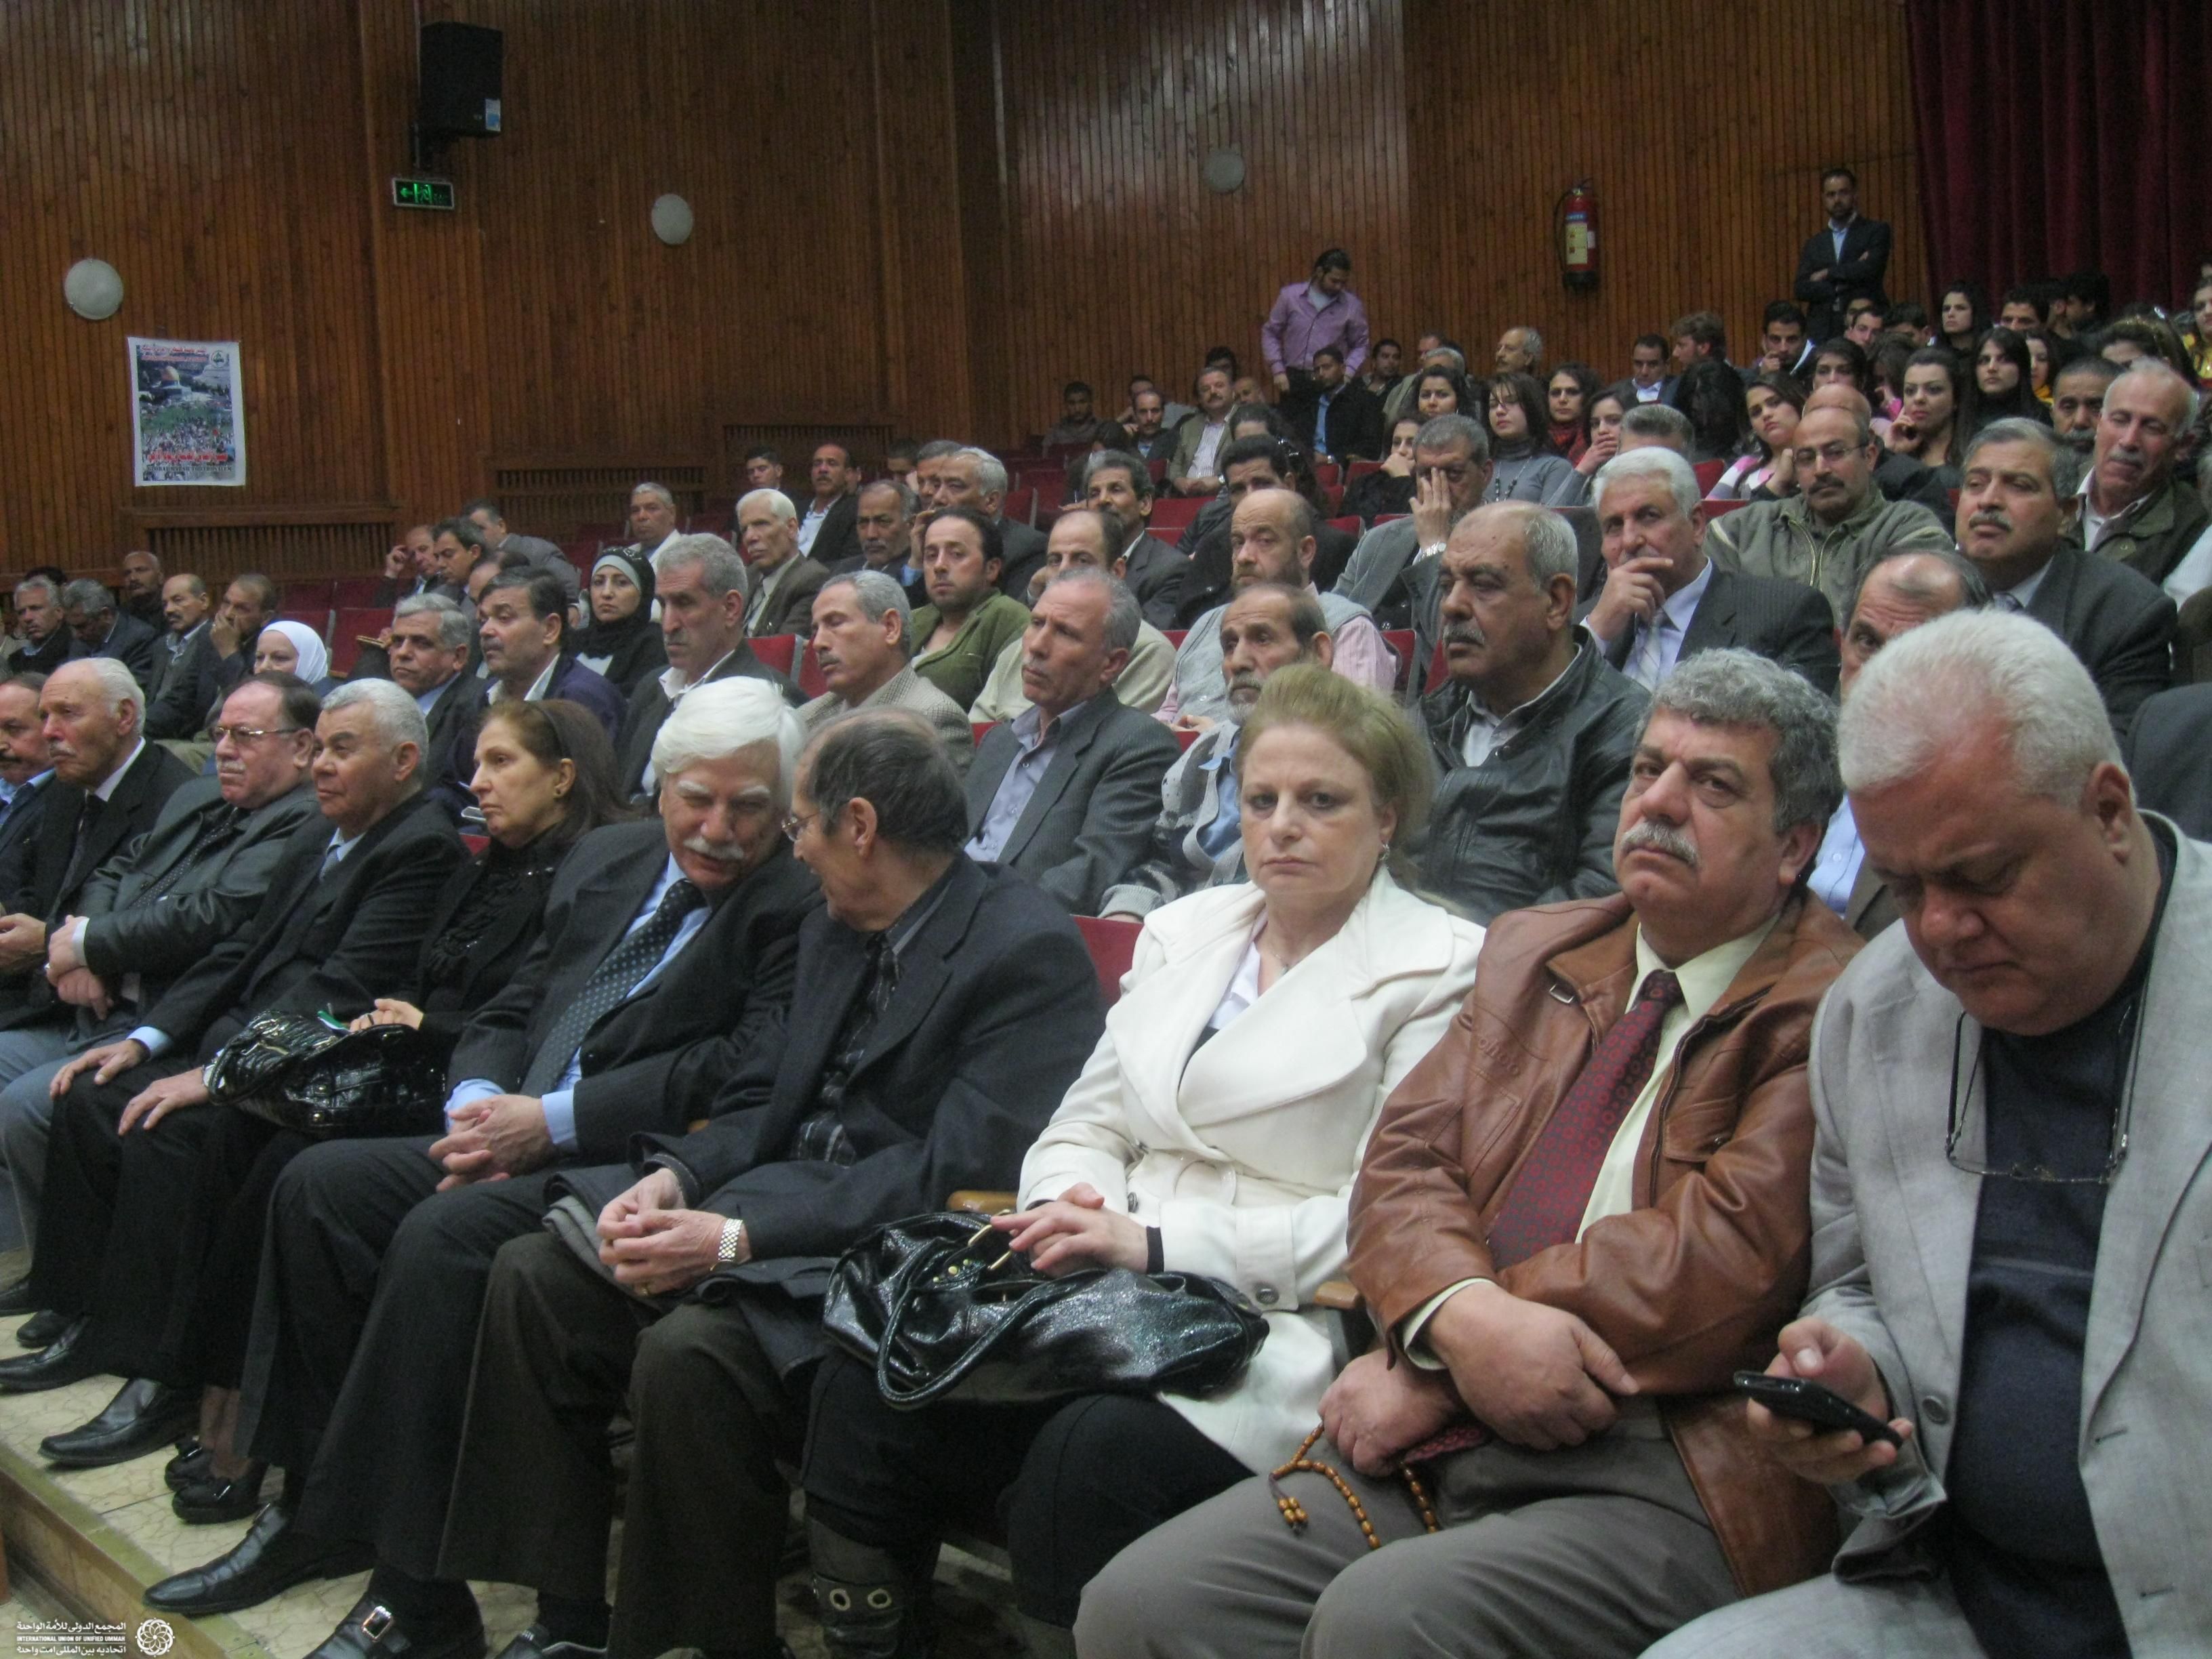 با حضور صدها فلسطینی برگزار شد:

همایش بزرگ کاروان جهانی الی بیت المقدس در دمشق